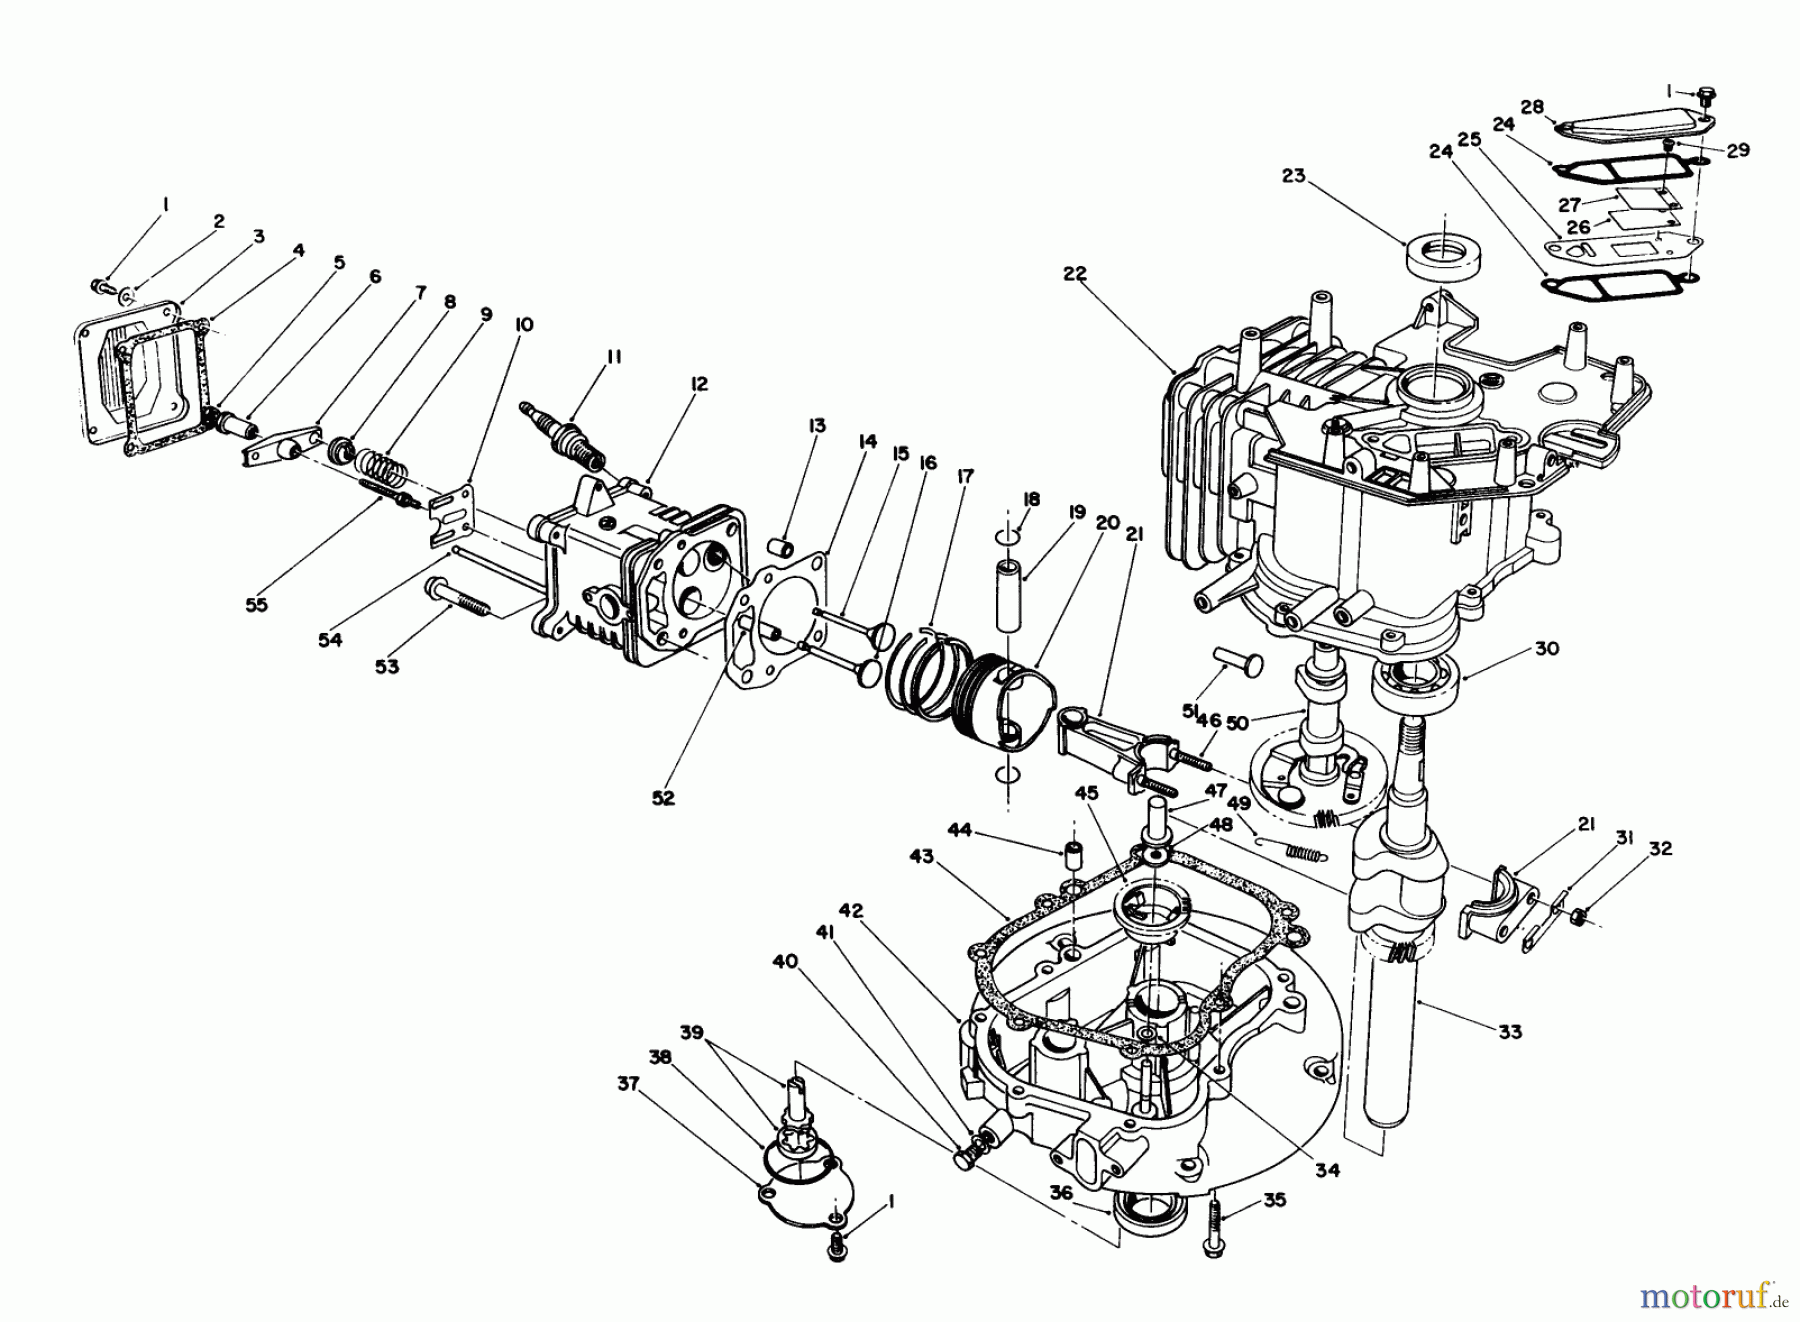  Toro Neu Mowers, Walk-Behind Seite 1 20627C - Toro Lawnmower, 1986 (6000001-6999999) ENGINE ASSEMBLY #2